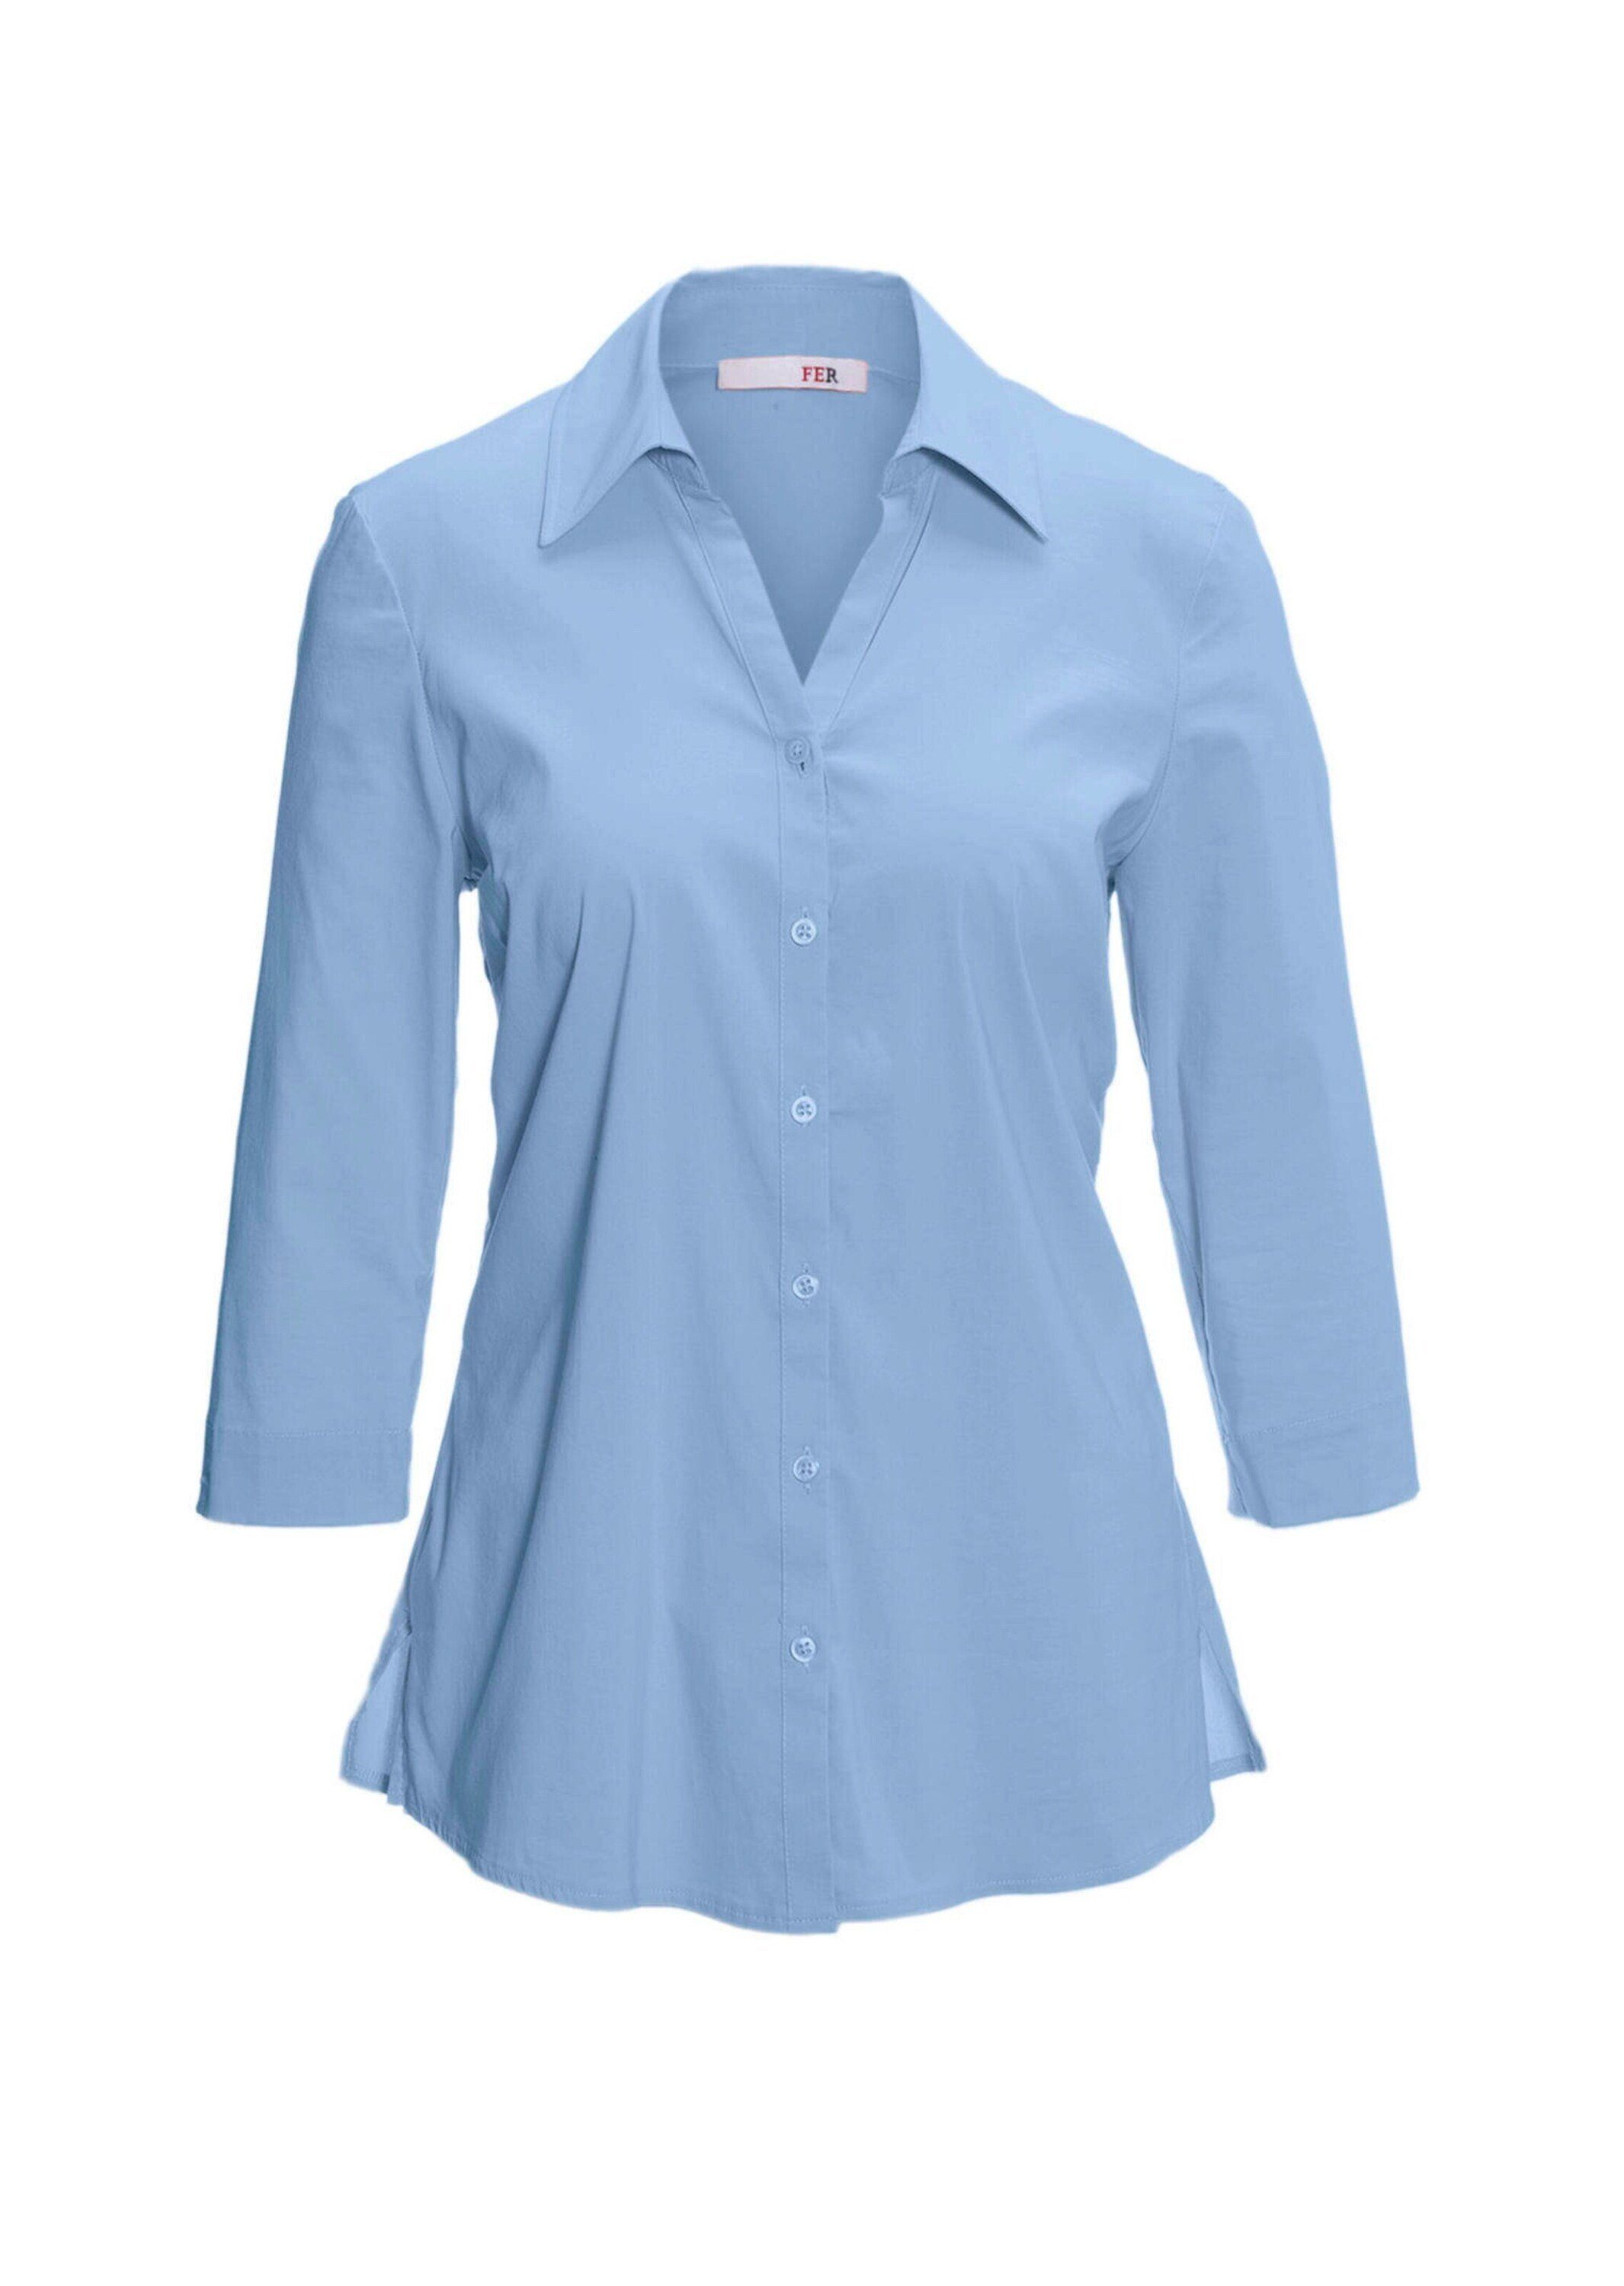 Bluse Hemdbluse GOLDNER Baumwolle mit Stretchbequeme Kurzgröße: bleu